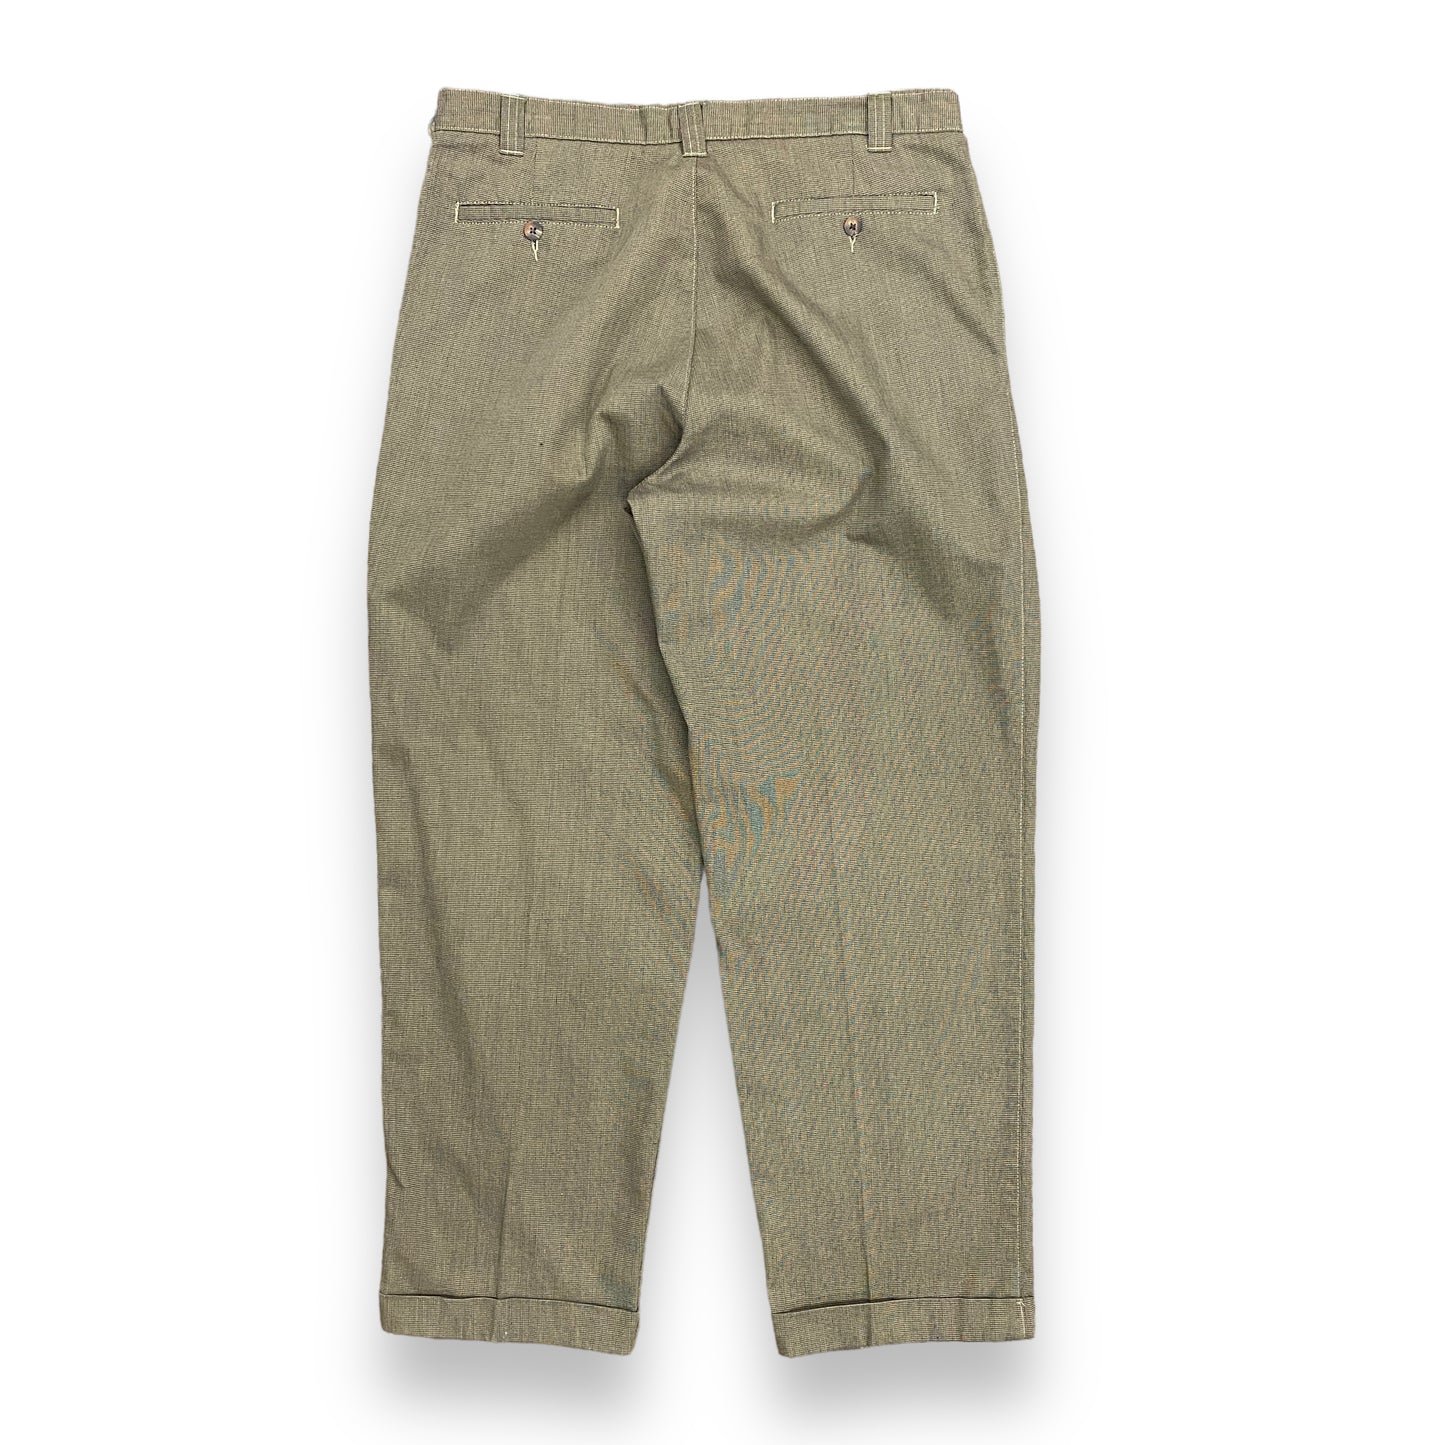 Bill Blass Brown & Black Pleated Pants - 36"x30"